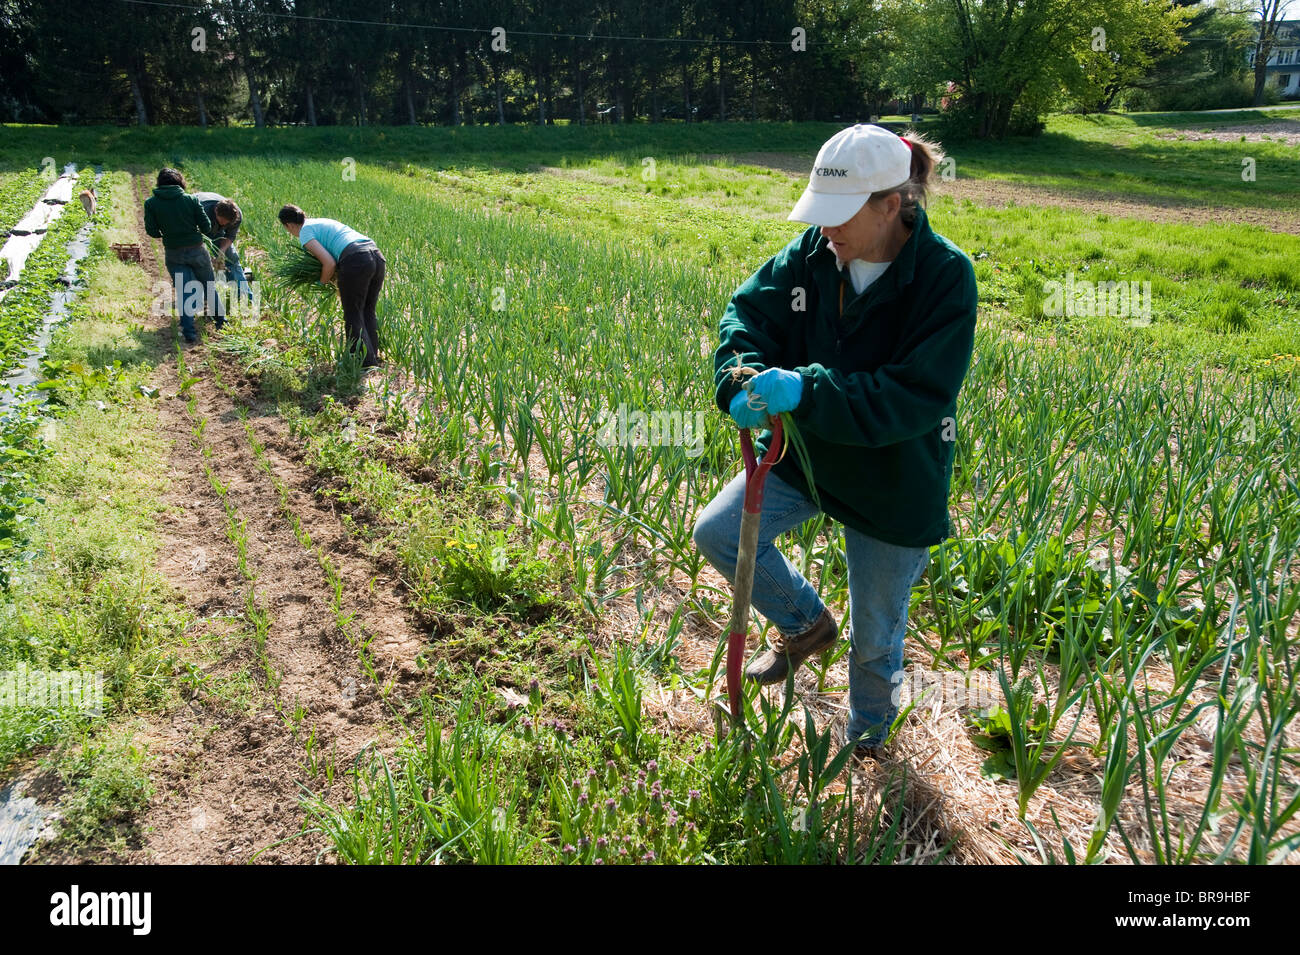 People working on organic farm Stock Photo